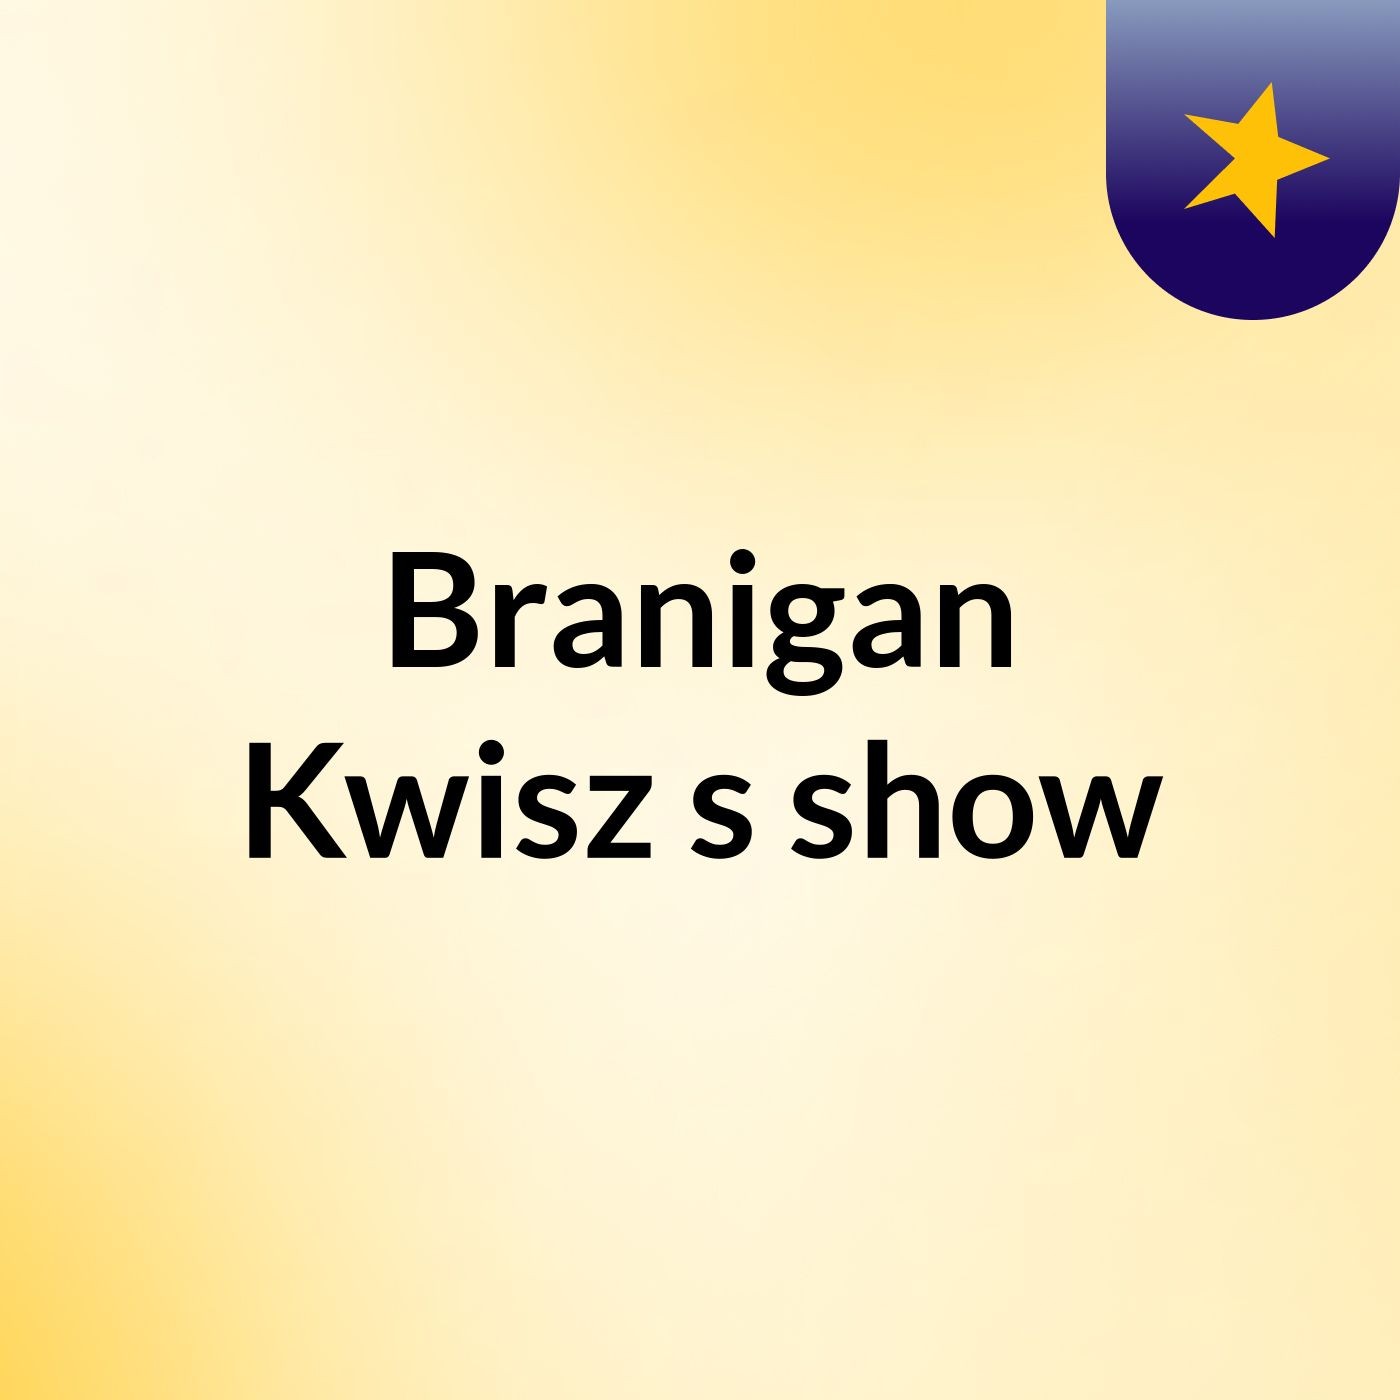 Branigan Kwisz's show